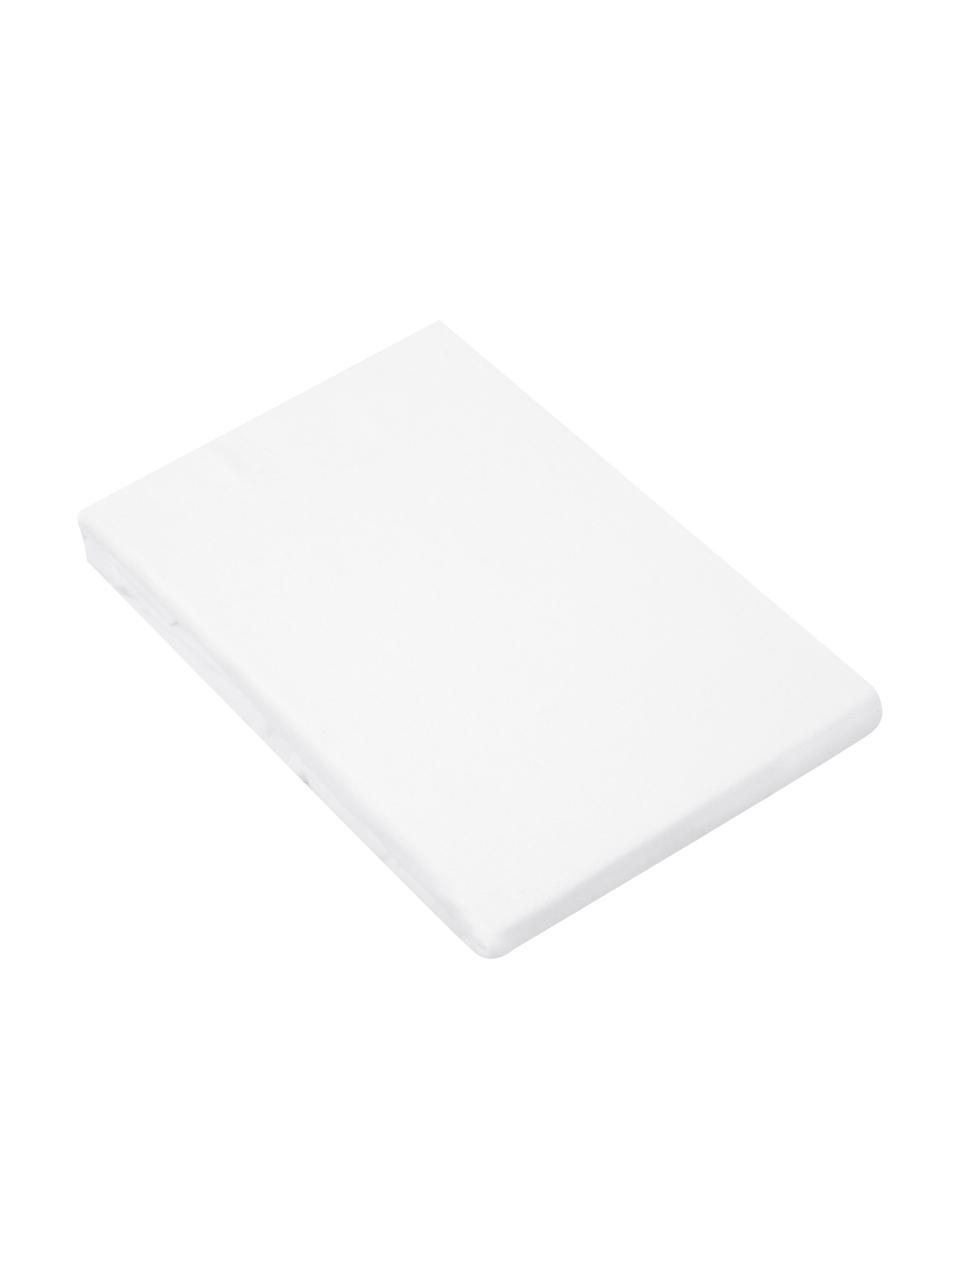 Boxspring-Spannbettlaken Biba aus Flanell in Weiß, Webart: Flanell Flanell ist ein k, Weiß, B 90 x L 200 cm